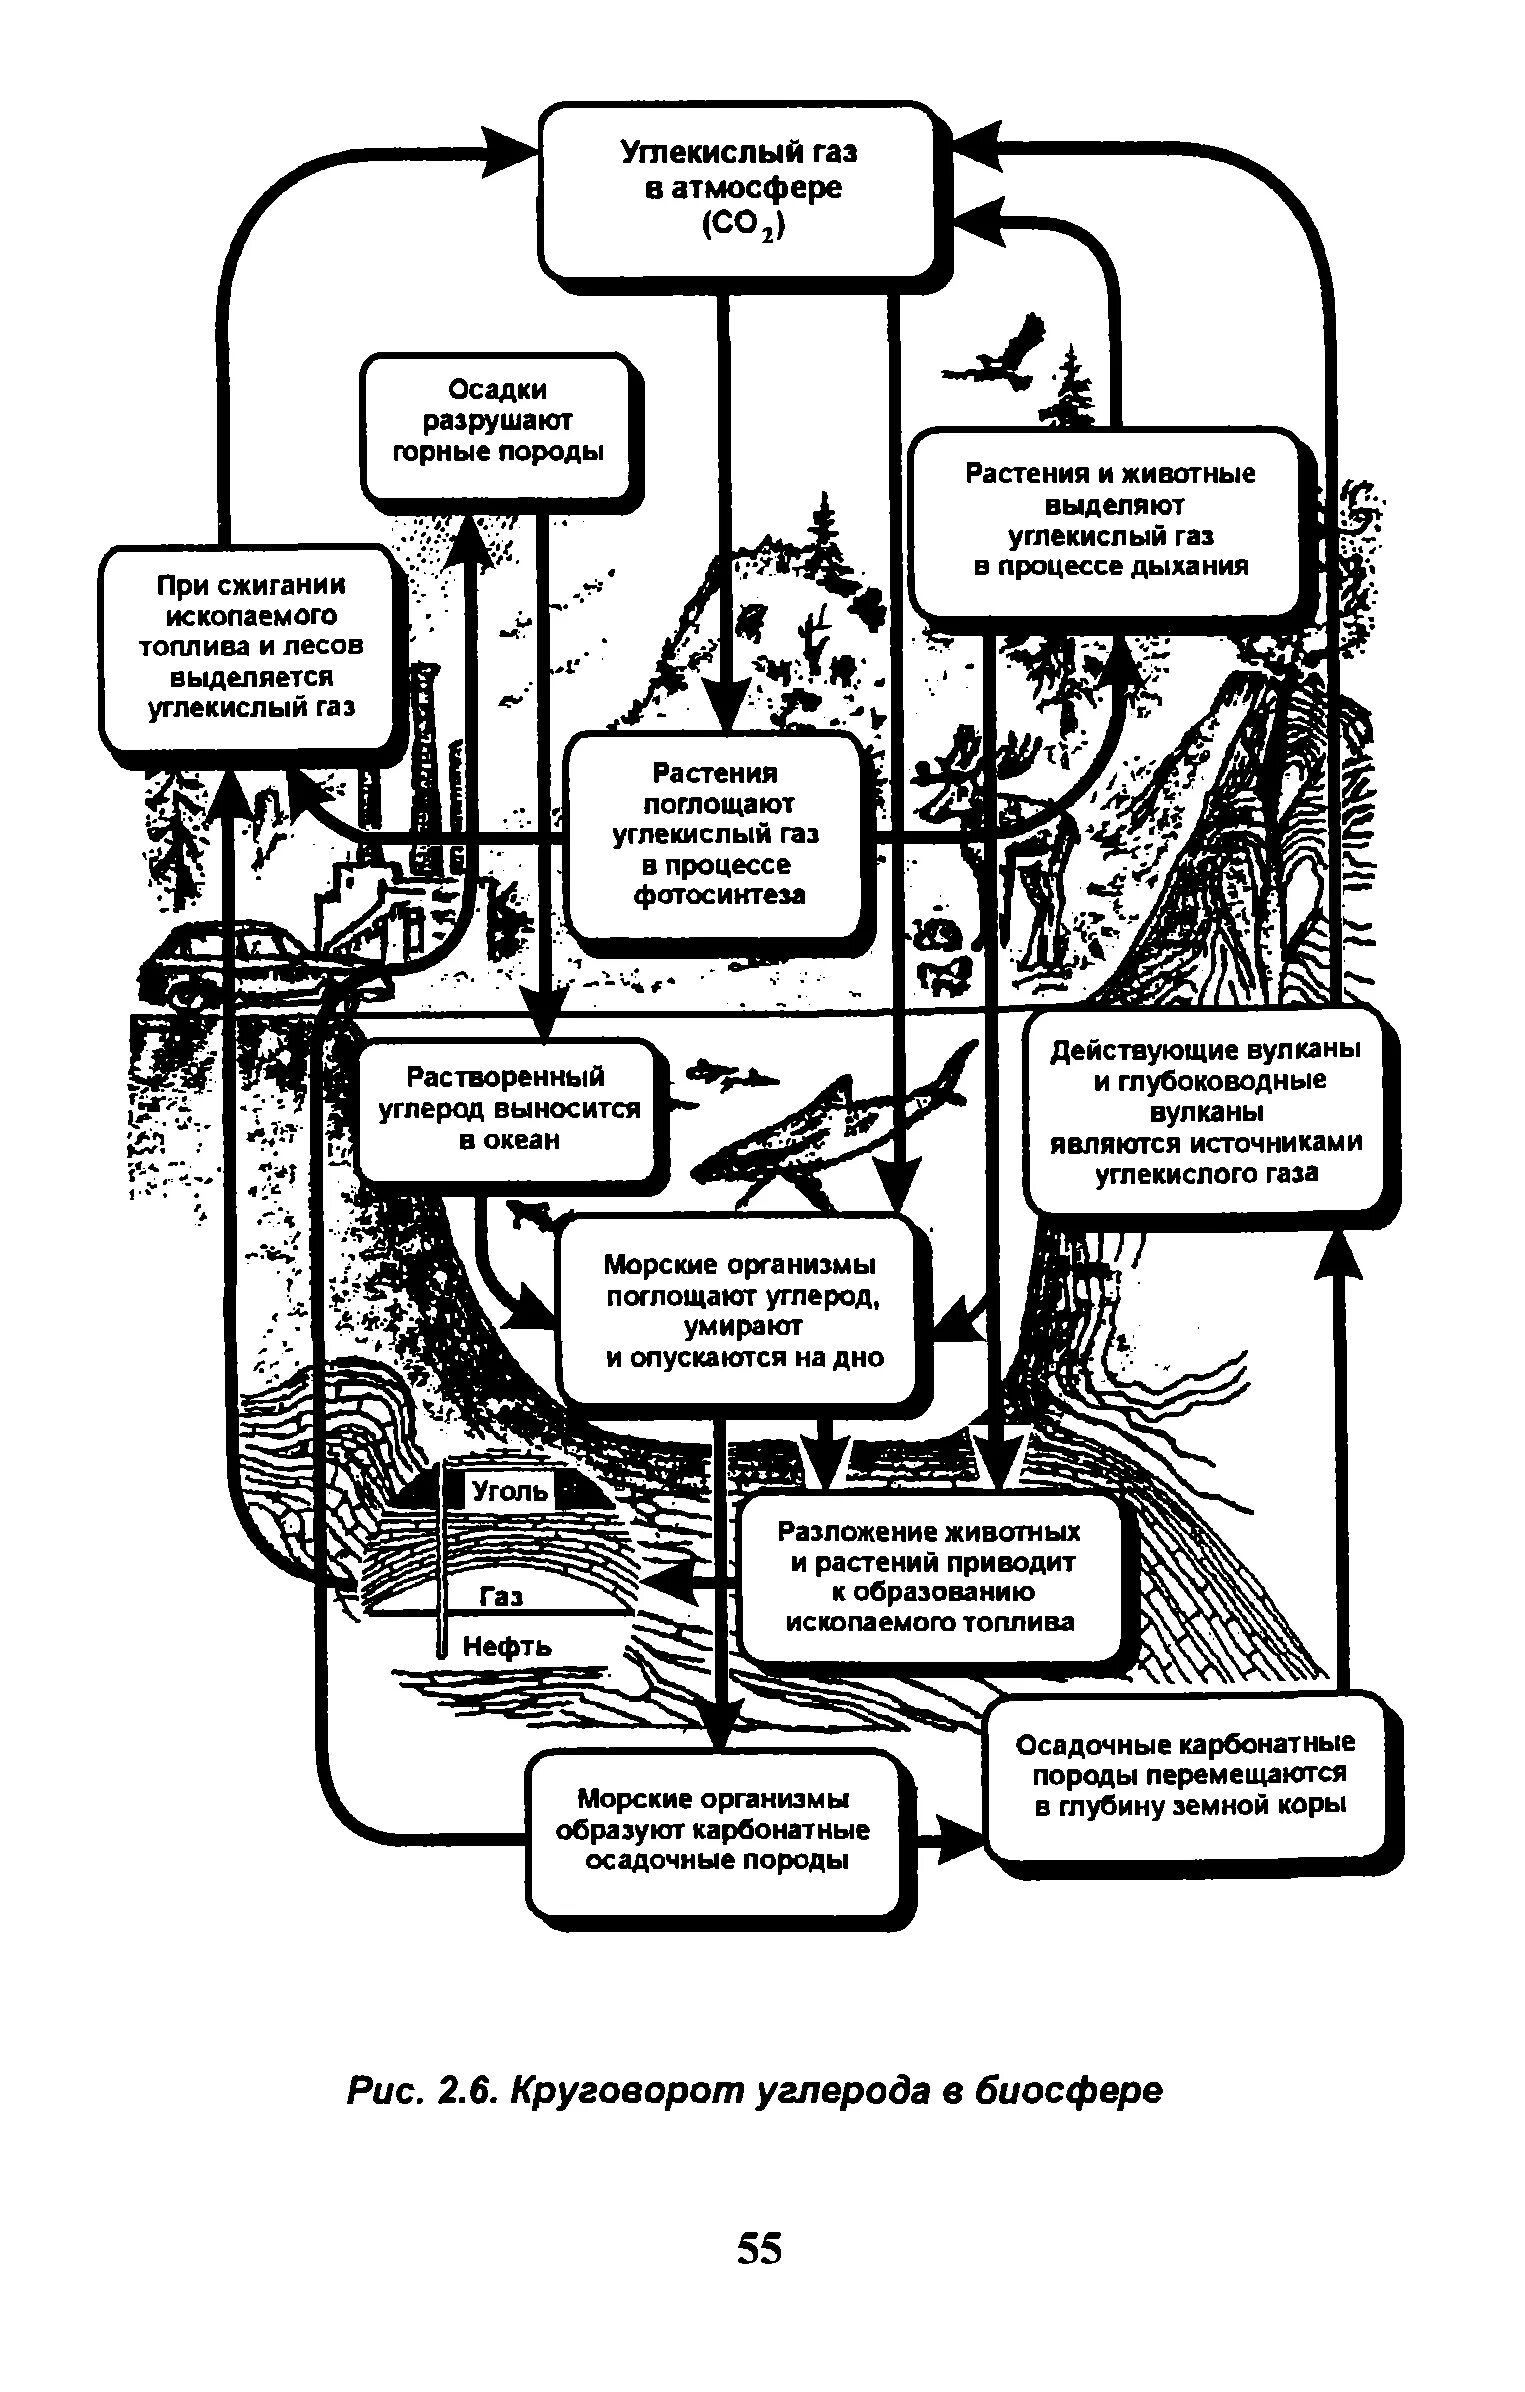 Схема круговорота углекислого газа. Упрощенная схема круговорота углерода в биосфере. Схема биогеохимического цикла углерода в биосфере. Круговорот углерода в биосфере. Круговорот углерода в биосфере схема.